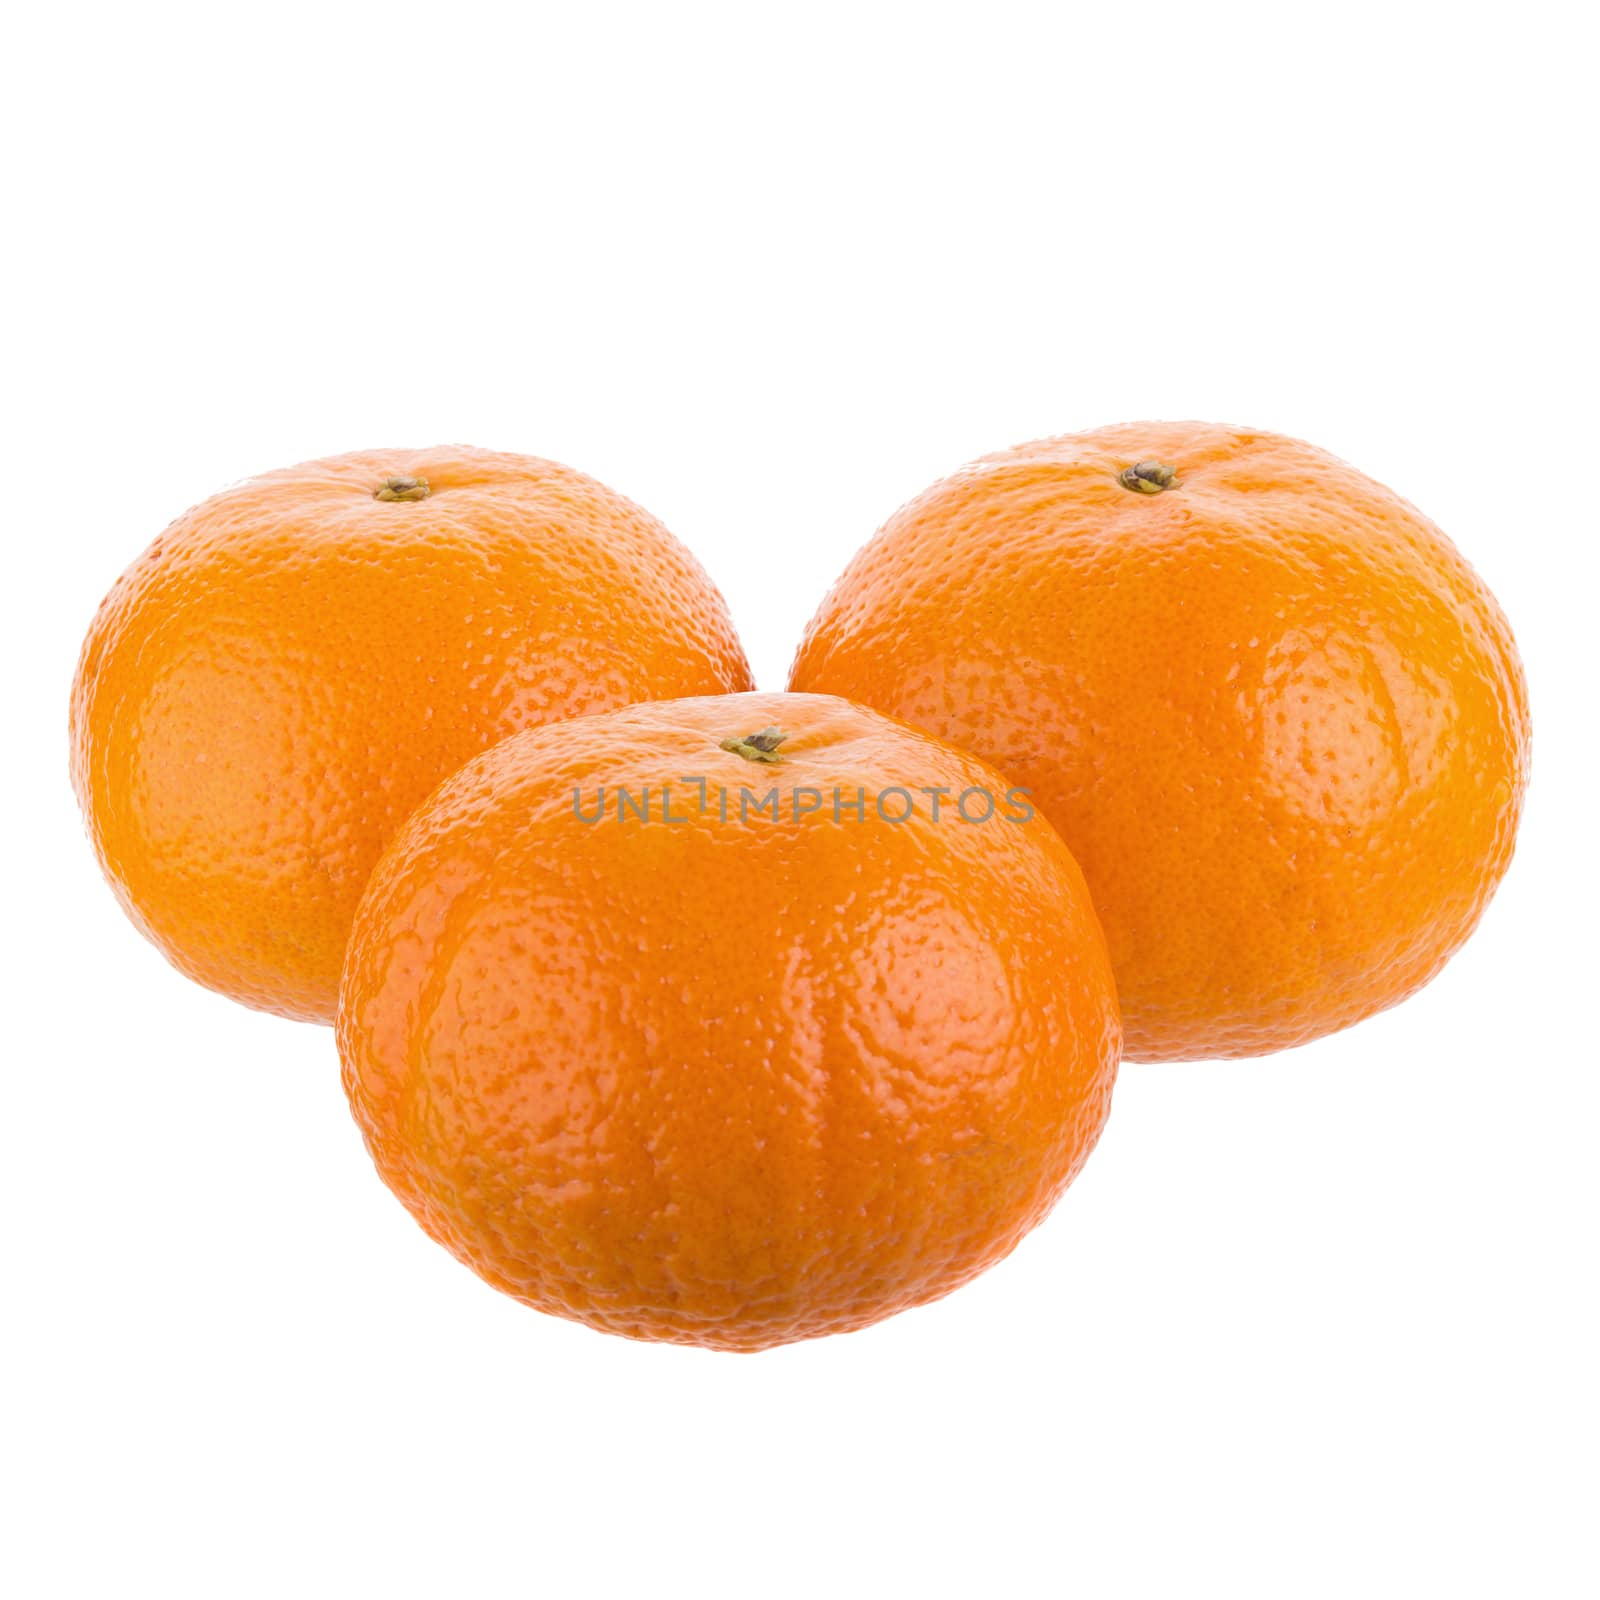 fresh orange fruit isolated on white background.